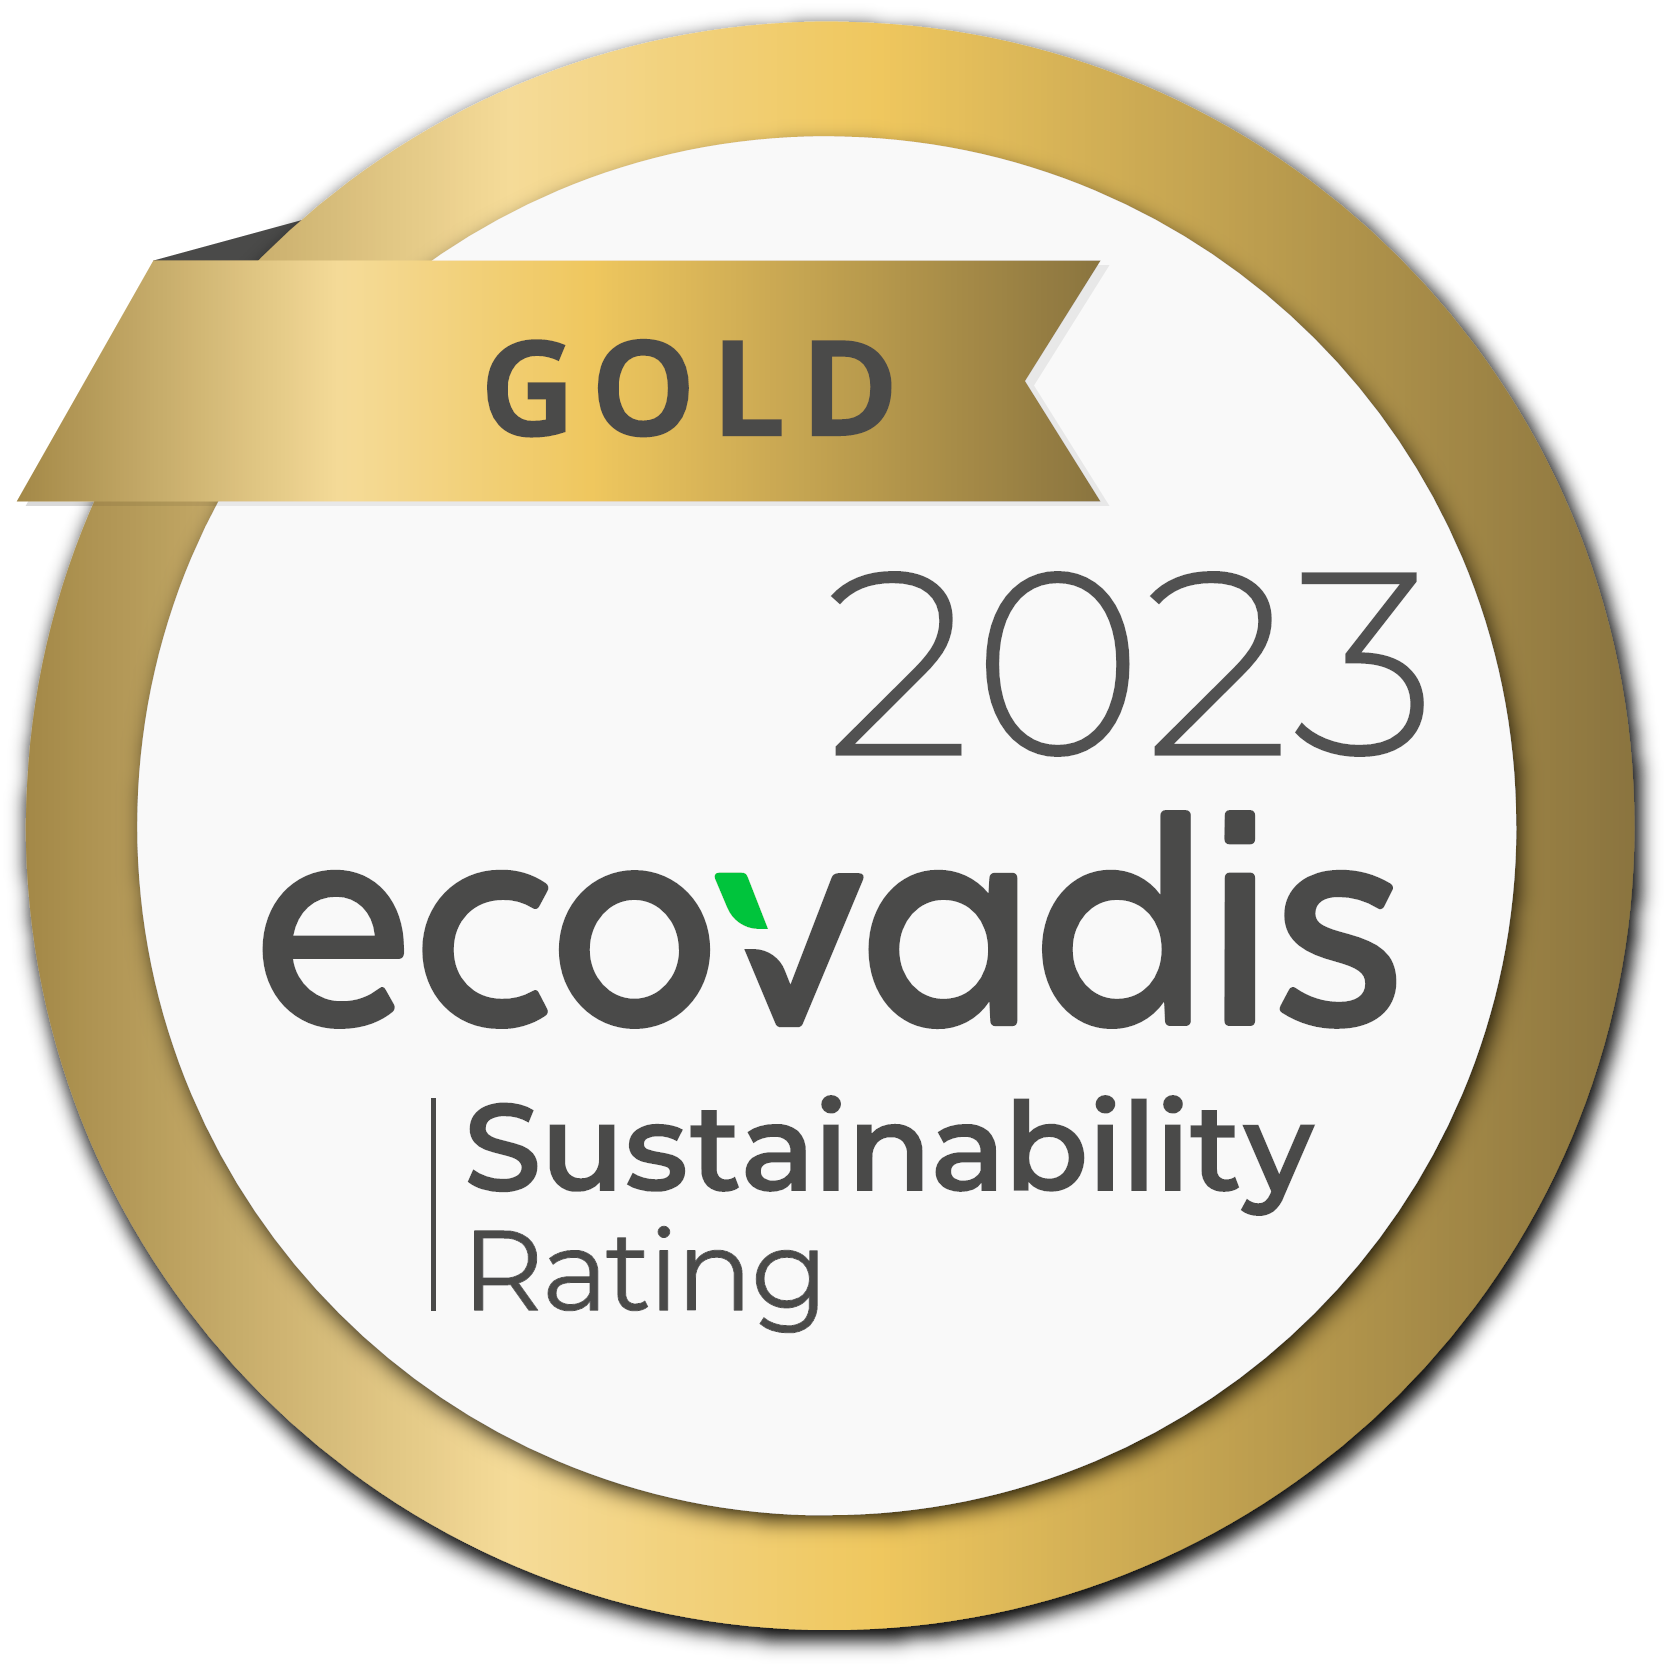 ecovadis Sustainability Rating